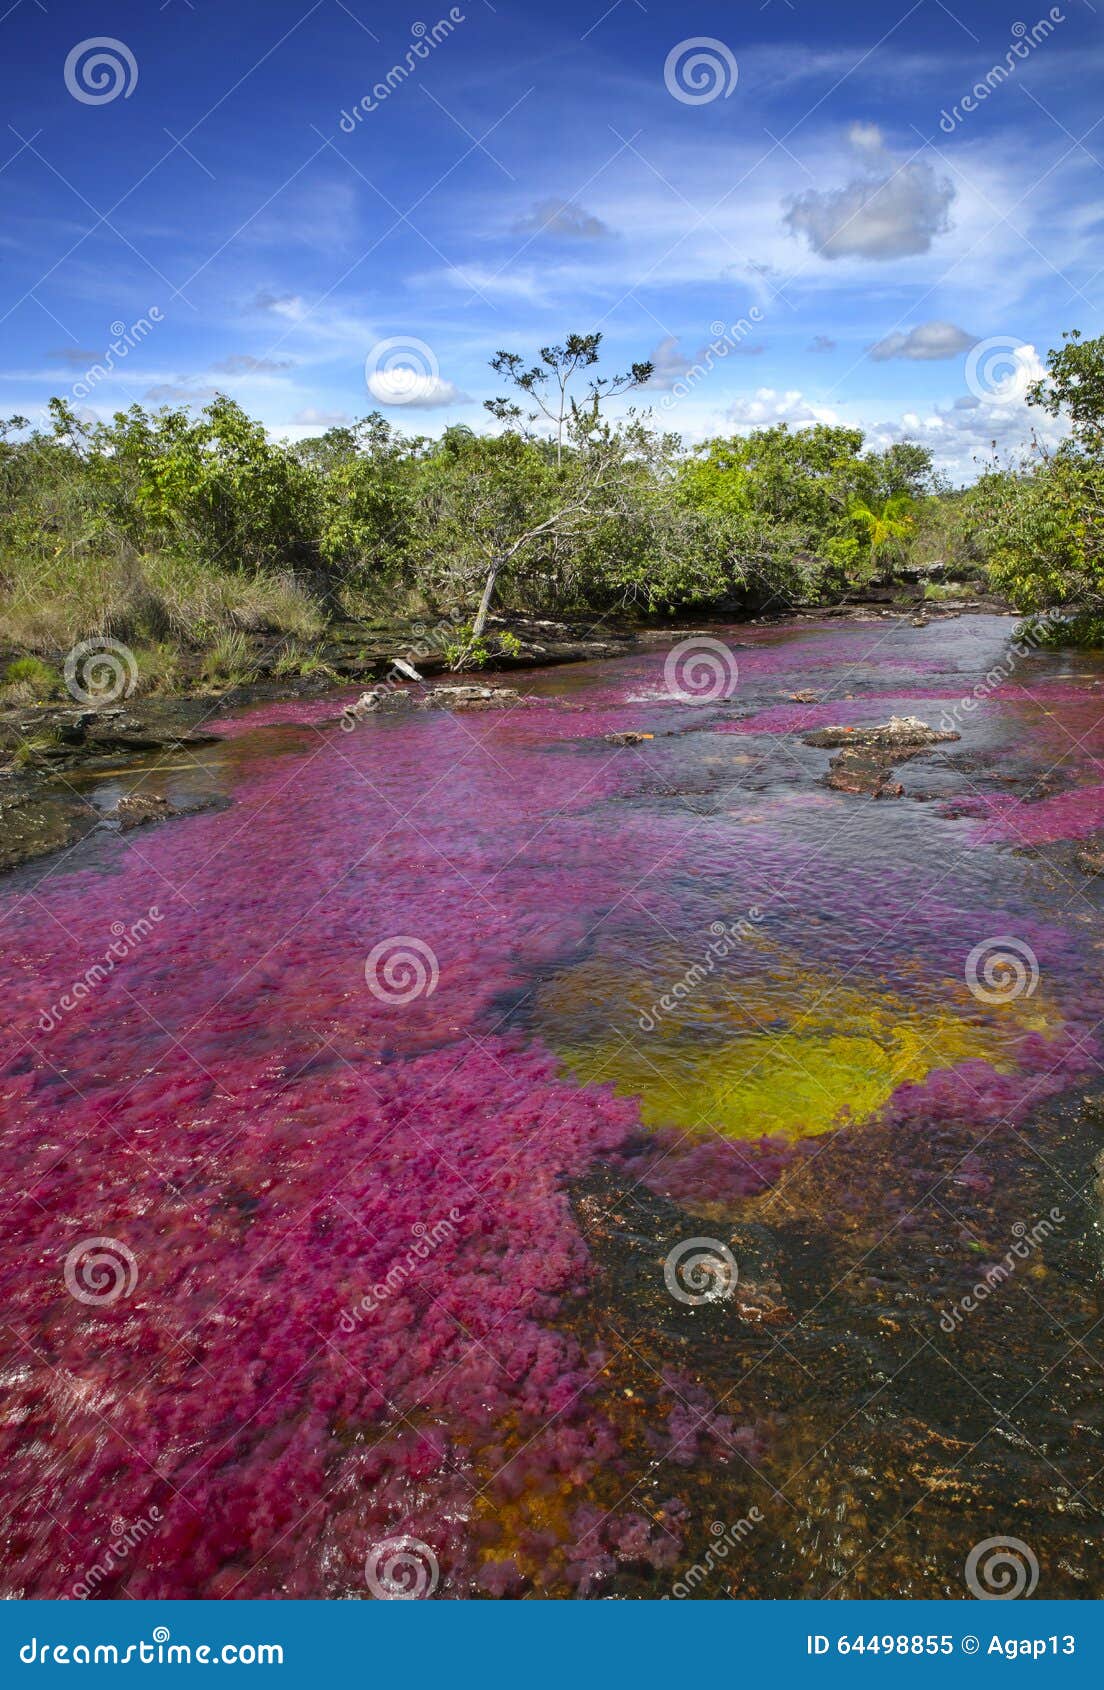 the caÃÂ±o cristales, one of the most beautiful rivers in the world